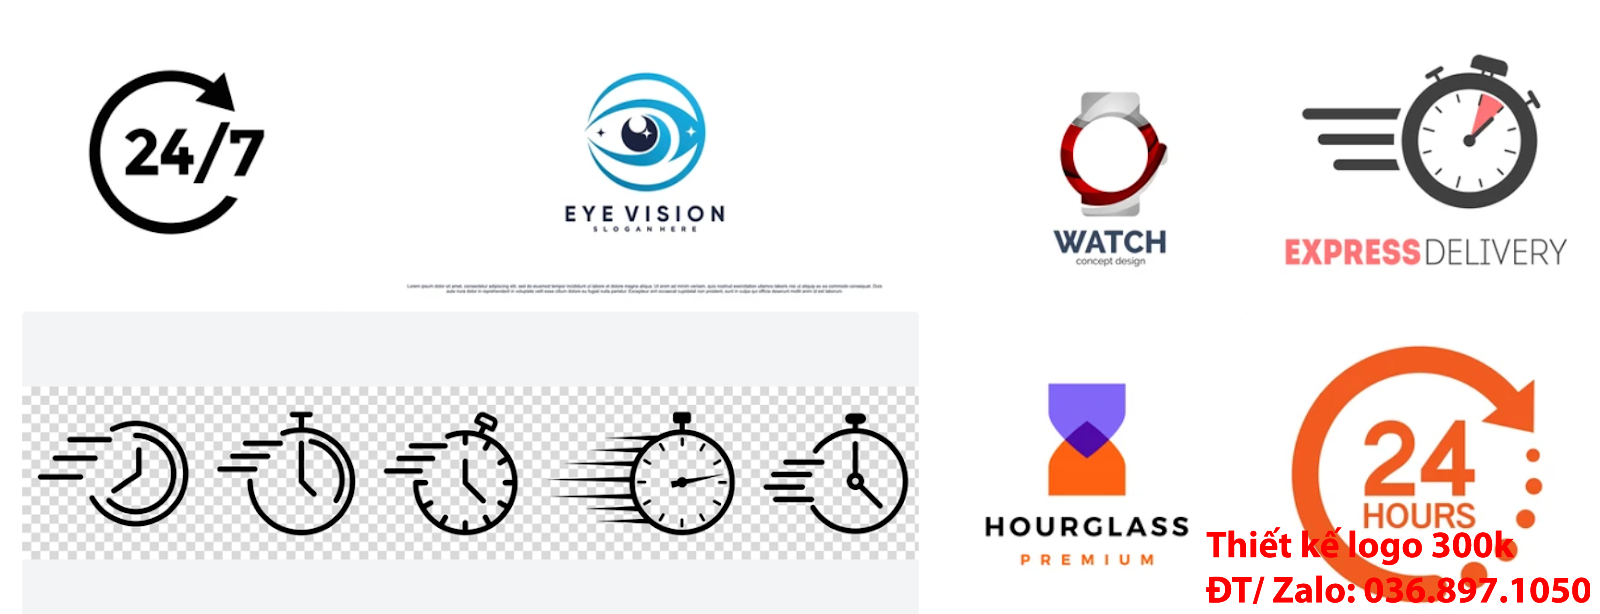 Mẫu Hình ảnh Logo bán đồng hồ PNG và Vector đẹp giá rẻ chất lượng cao 500k